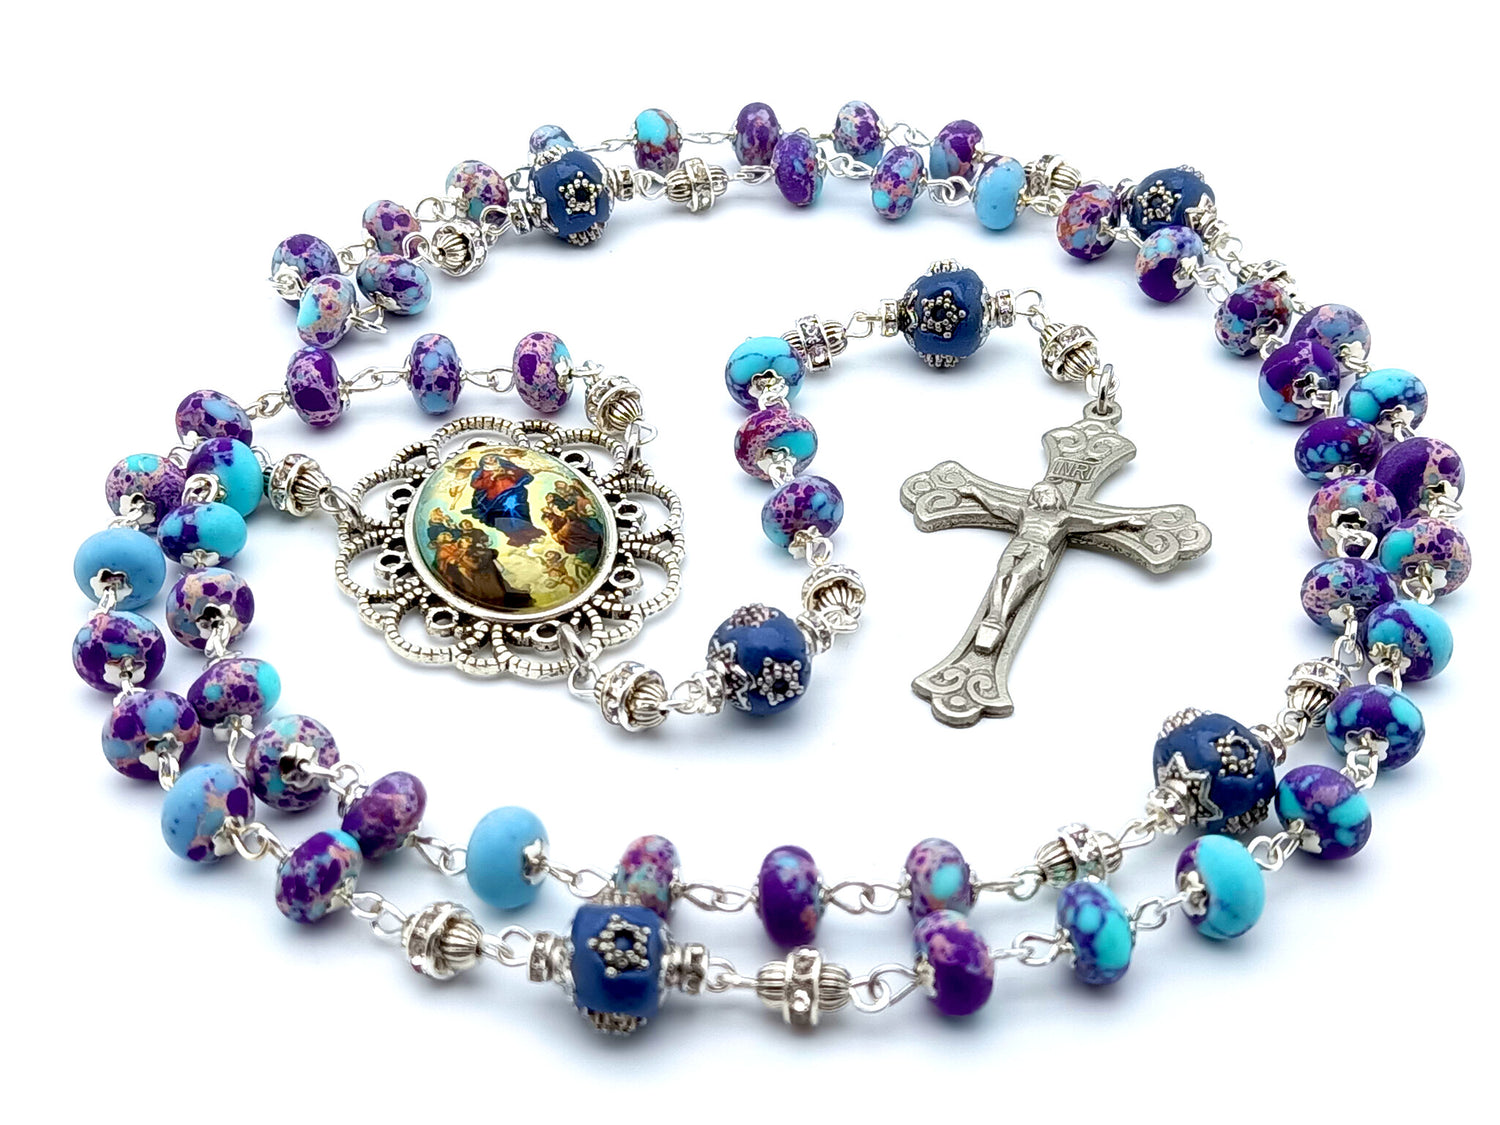 Genuine Murano Bead Rosary from Italy - Real Murano Glass Beads